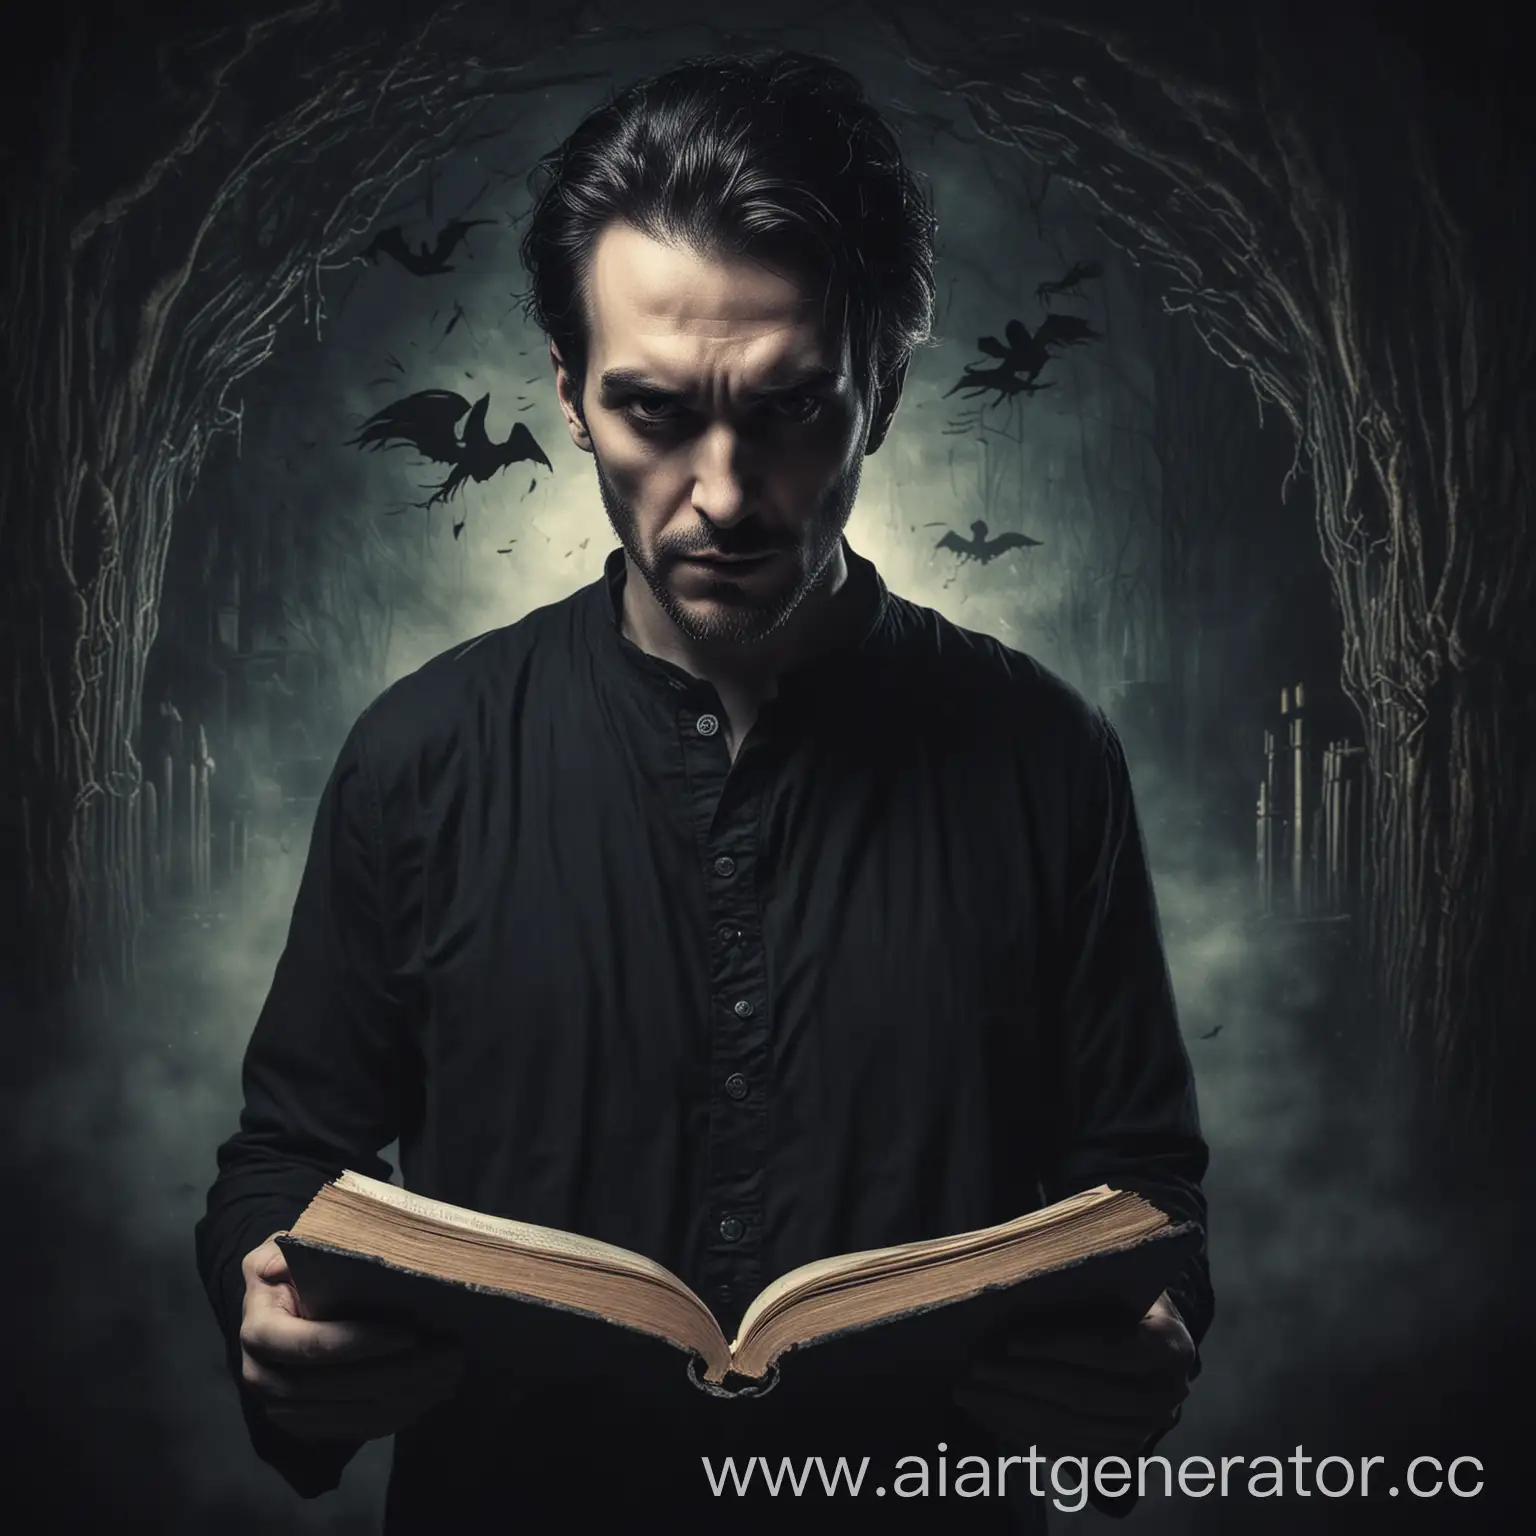 мужчина творец кошмаров, рассказчик историй ужасов, мрачный сказочник с книгой на мистическом фоне.